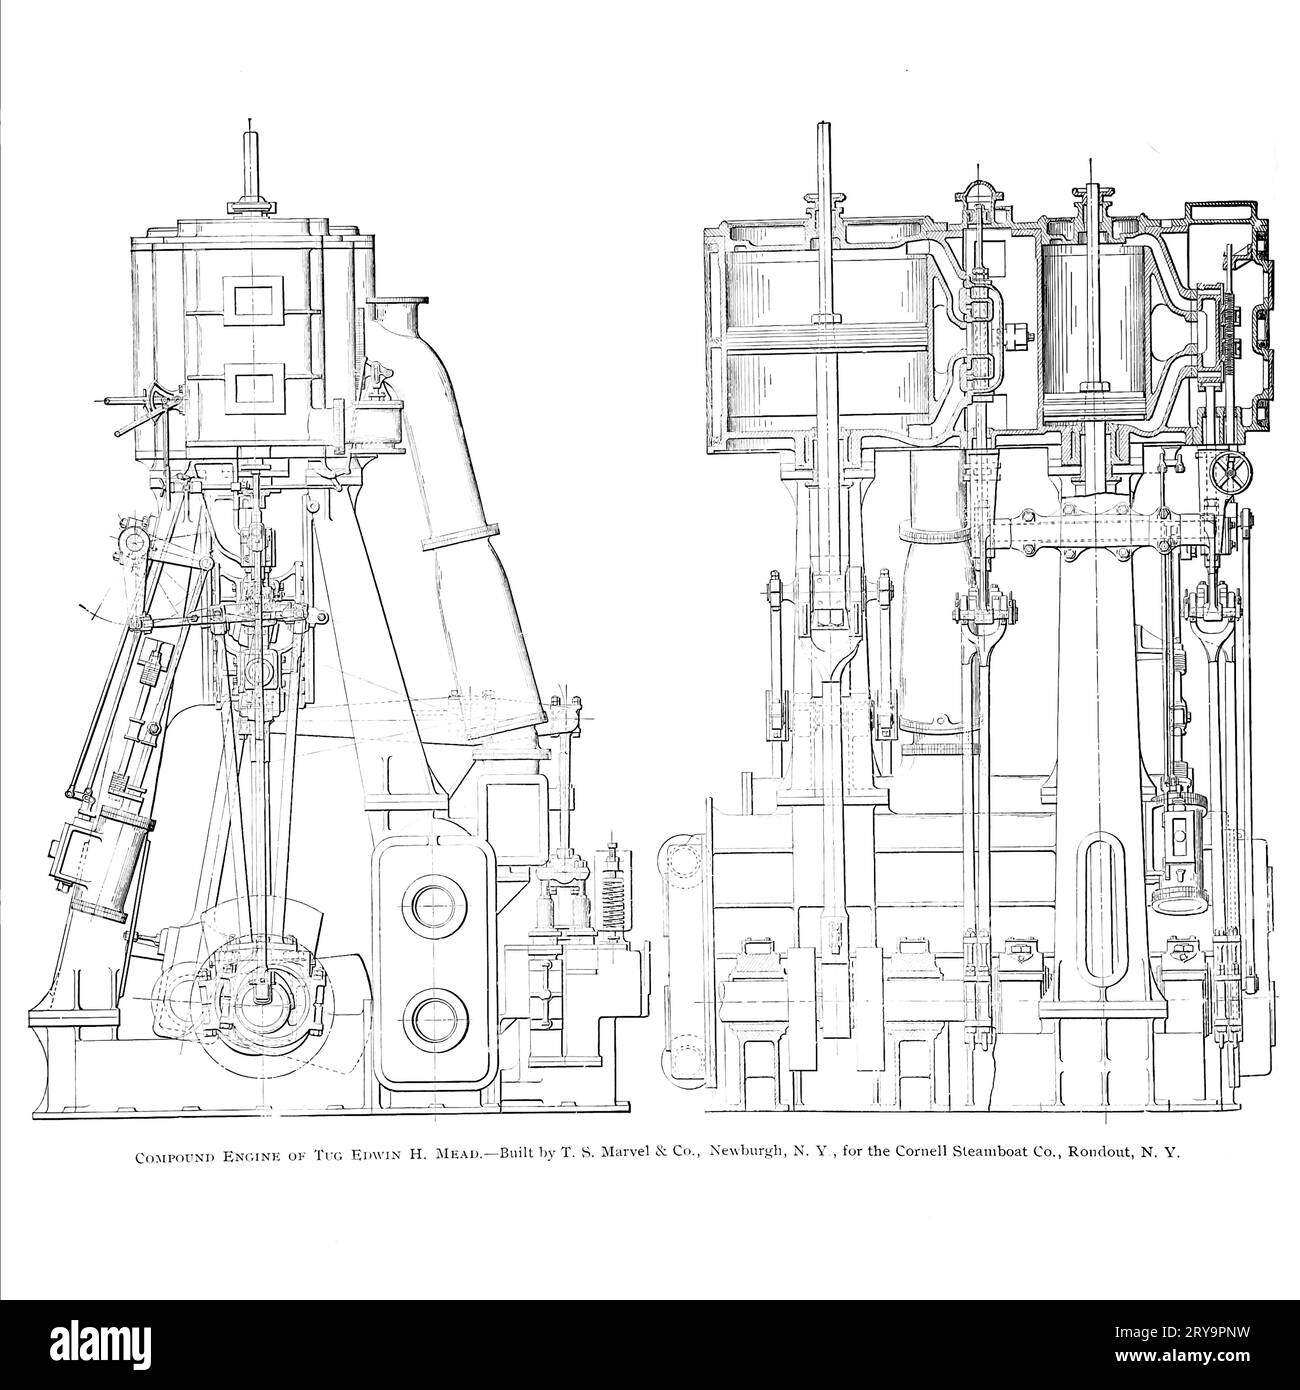 Compound engine blueprint, illustration Stock Photo